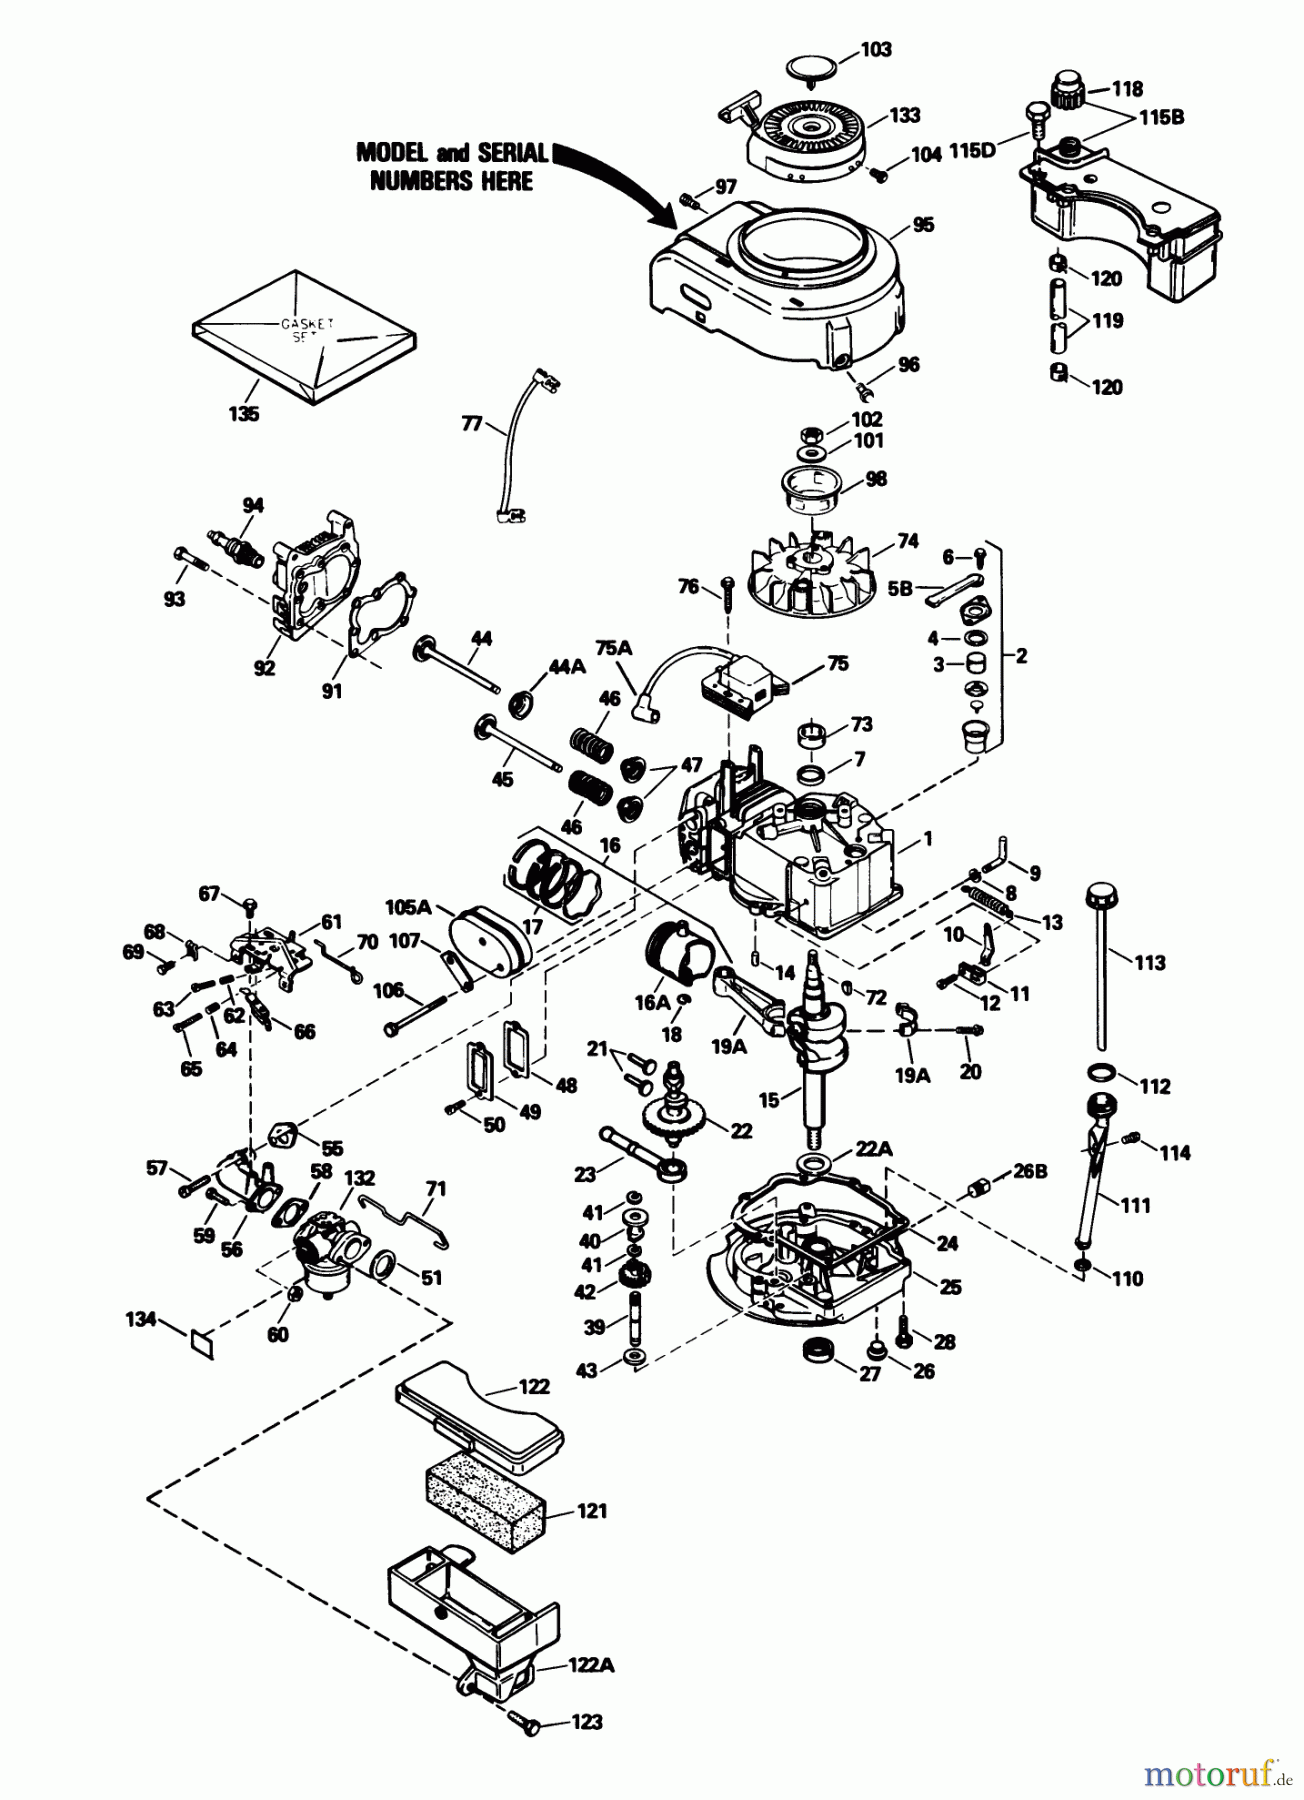  Toro Neu Mowers, Walk-Behind Seite 1 20632 - Toro Lawnmower, 1989 (9000001-9999999) ENGINE MODEL NO. TVS105-53113F